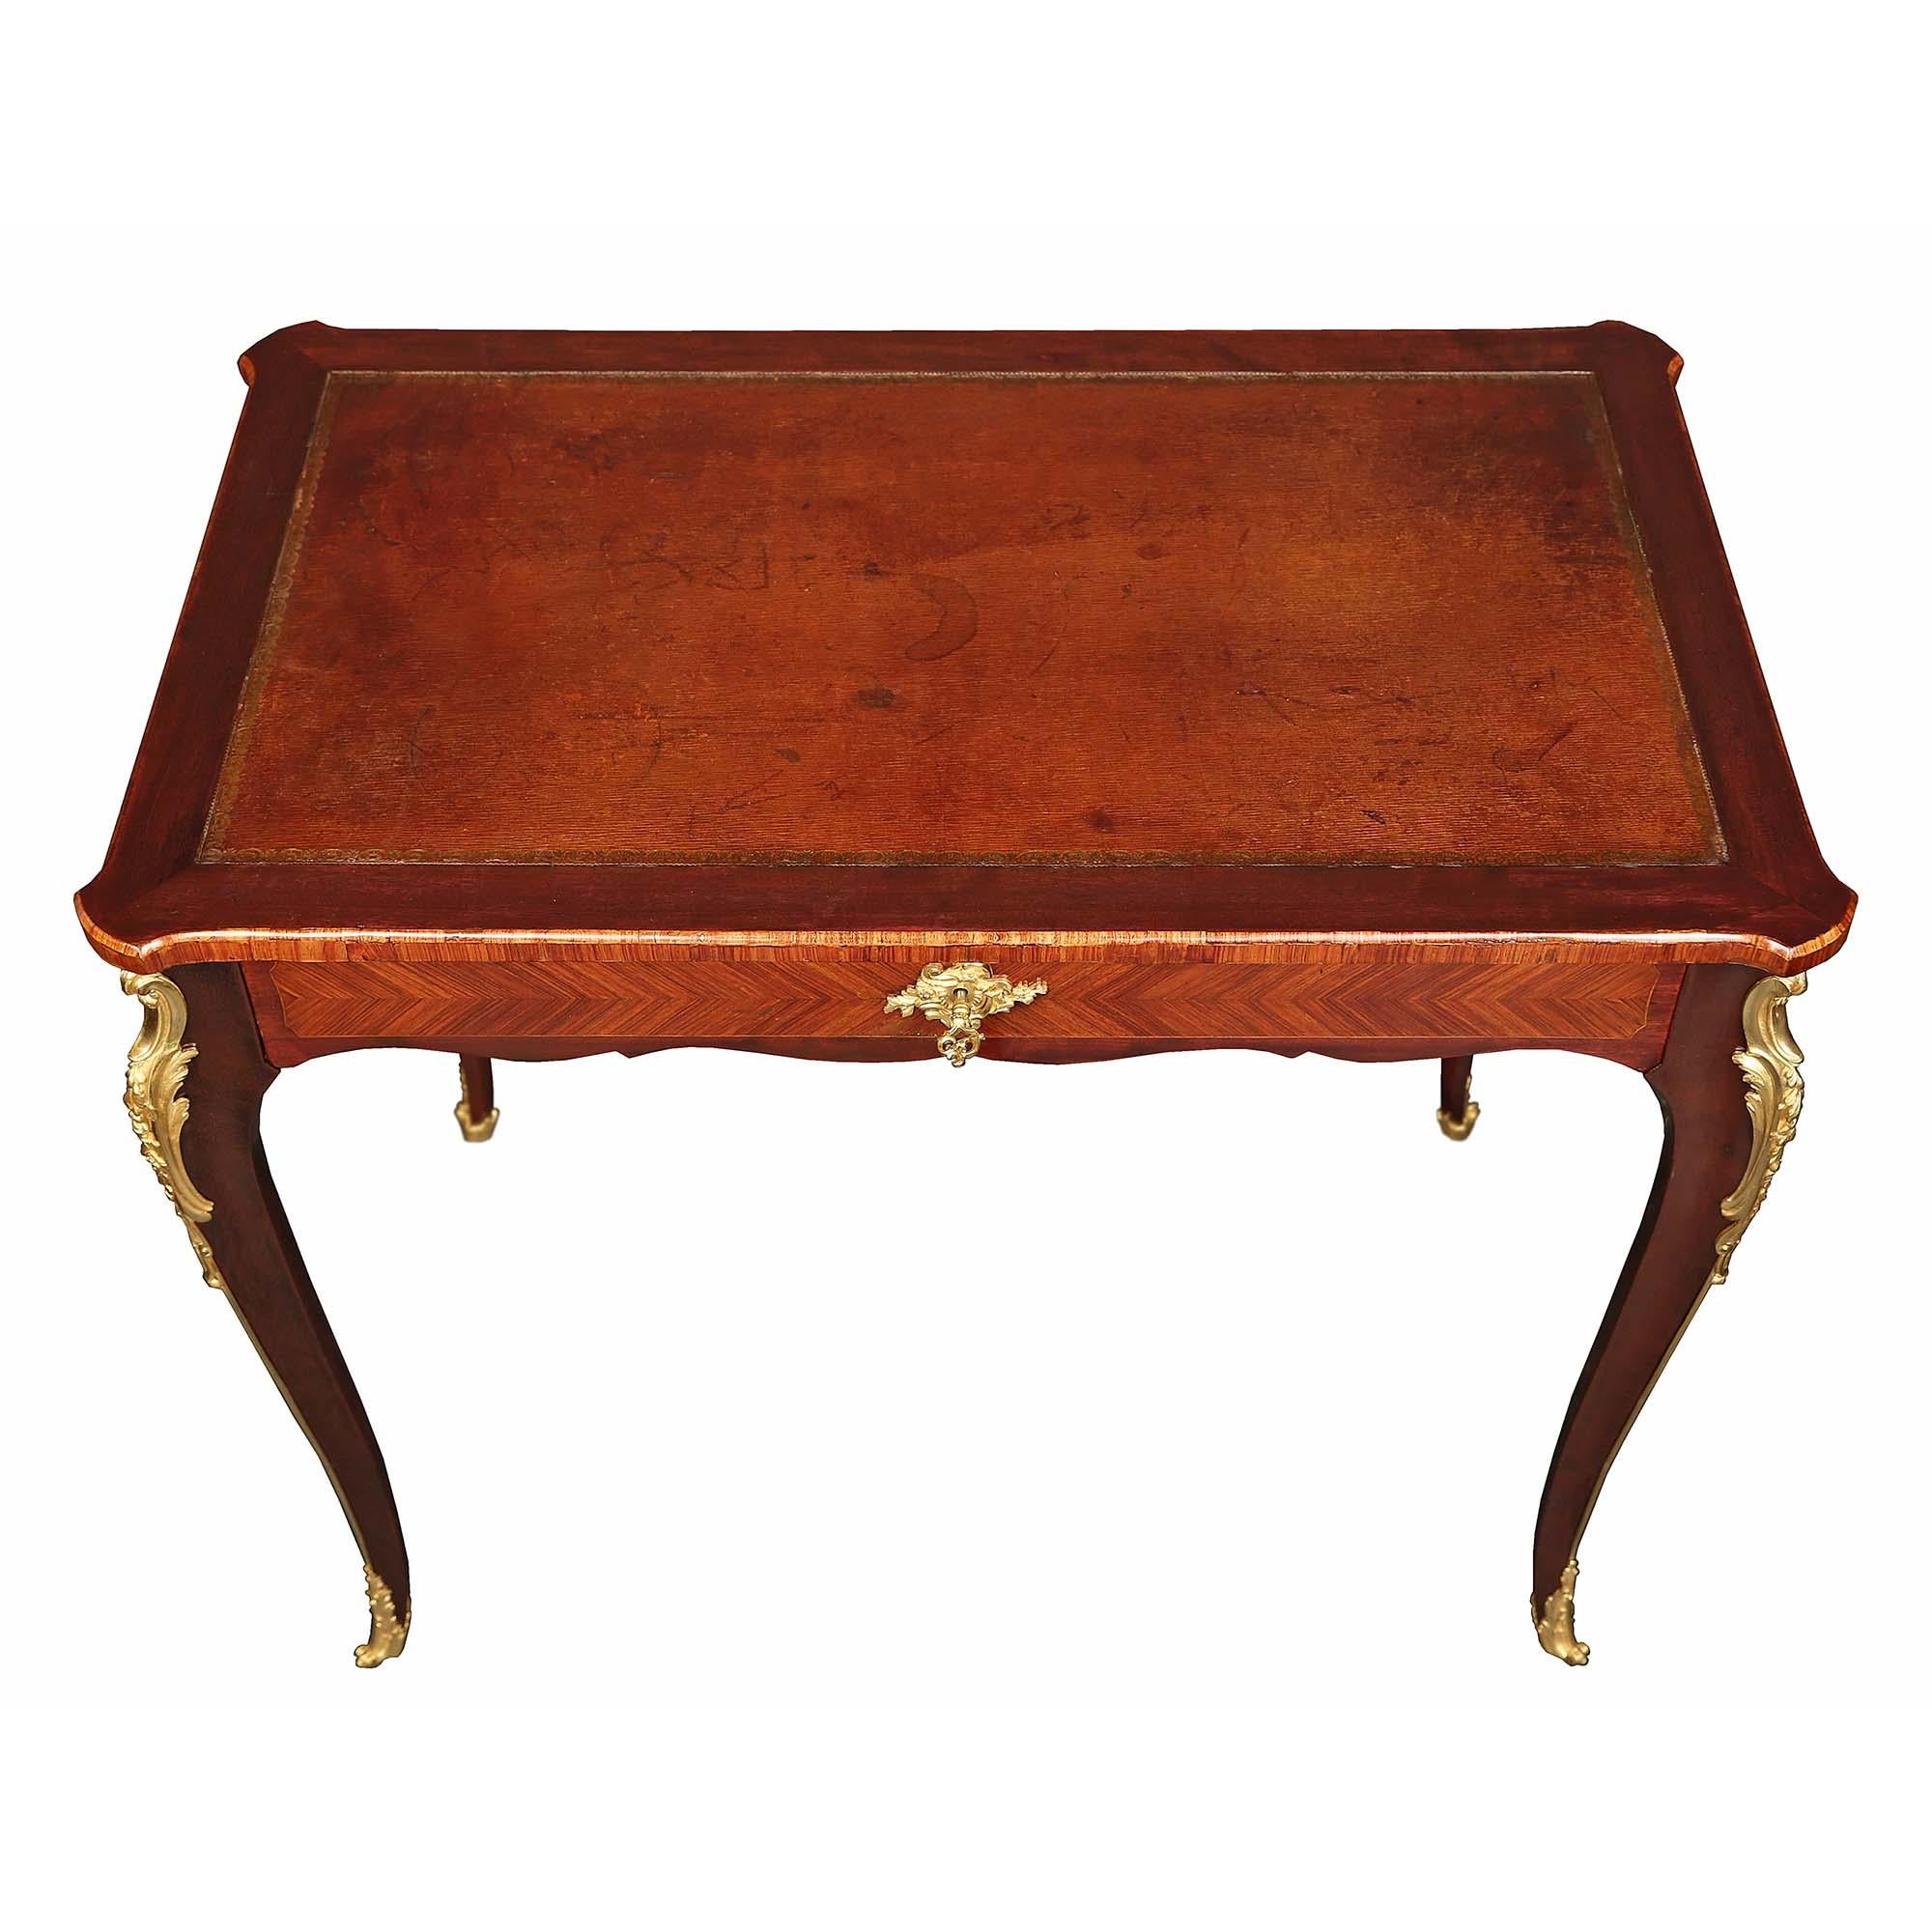 Ein eleganter französischer Mahagonischreibtisch aus dem 19. Jahrhundert im Stil Louis XV mit einer Schublade. Der Schreibtisch steht auf vier schlanken, eleganten Cabriole-Beinen mit stark ziselierten Ormolu-Foliendekorationen an der Oberseite,